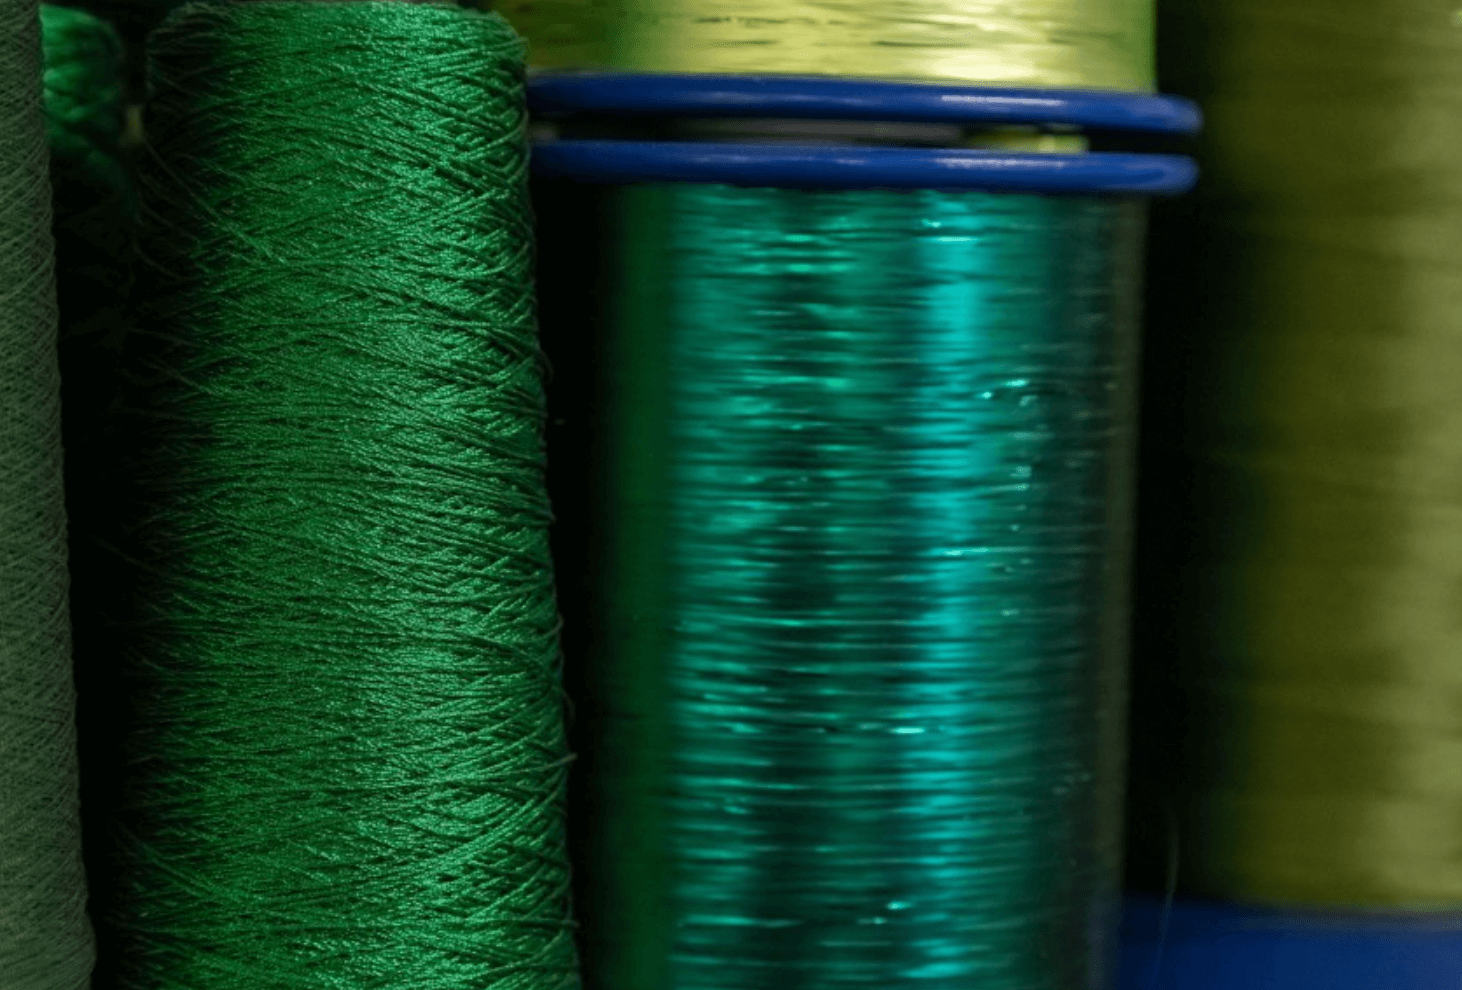 weave together patterns